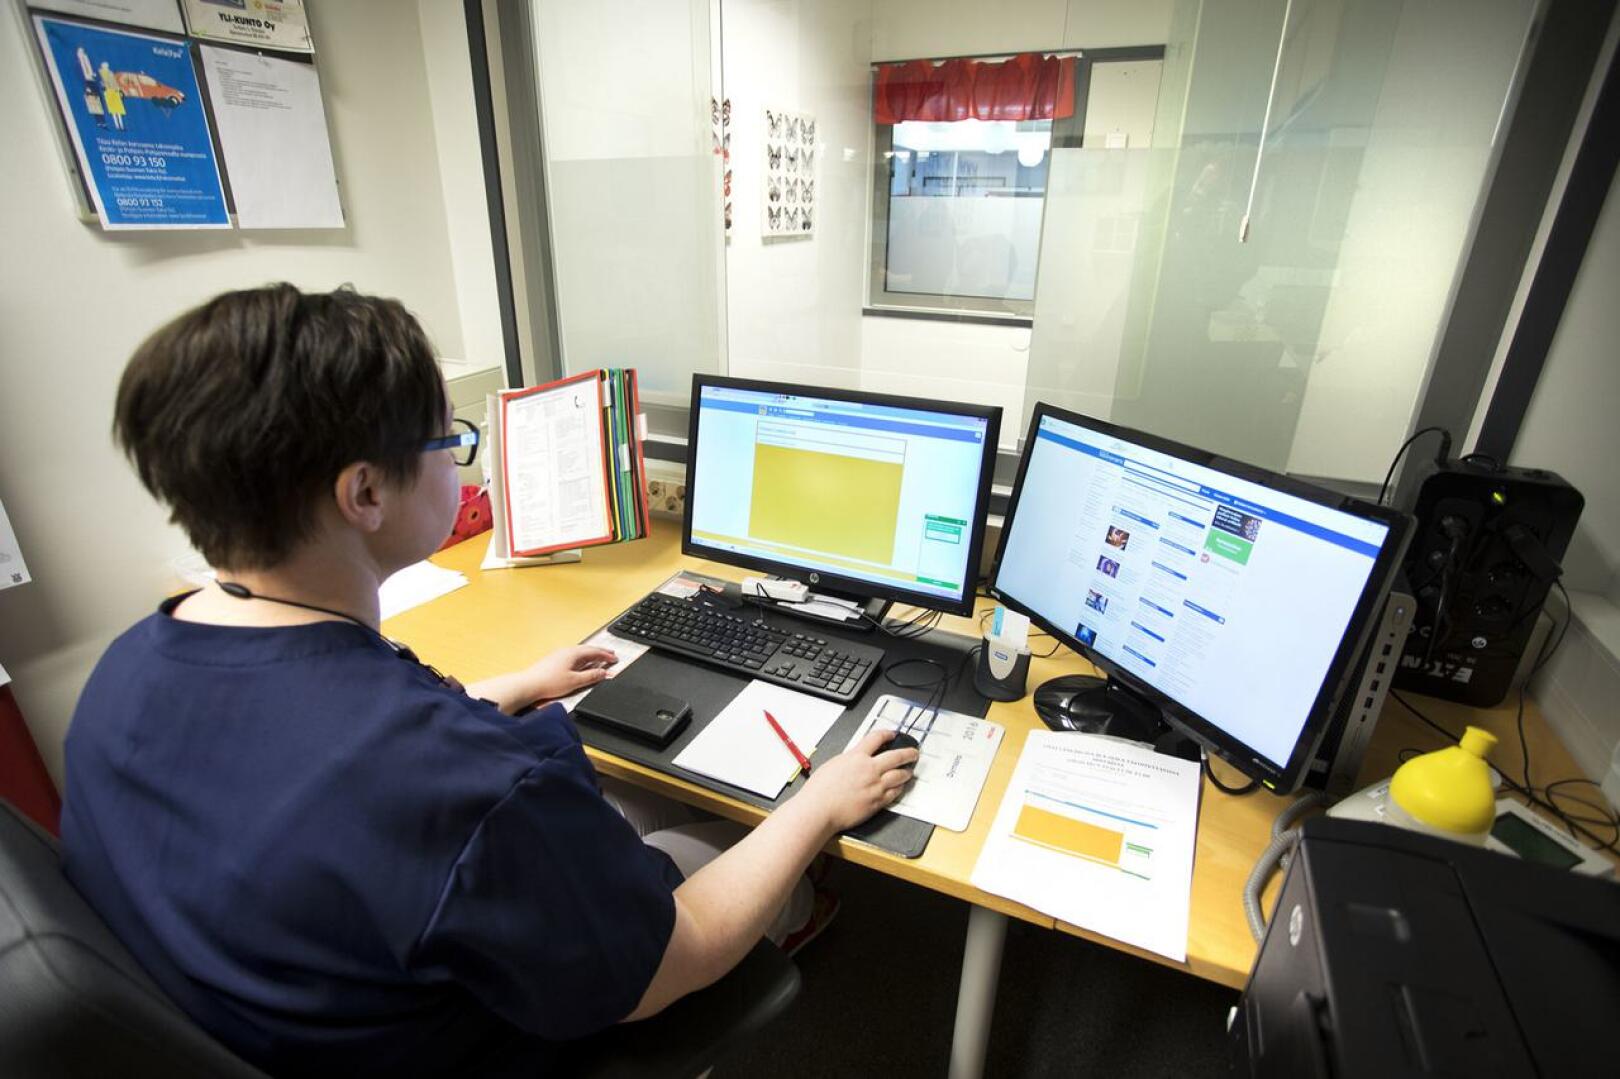 Sairaanhoitaja Anne Niemelä näyttää käyttää chat-lääkäriä apuna työssään.